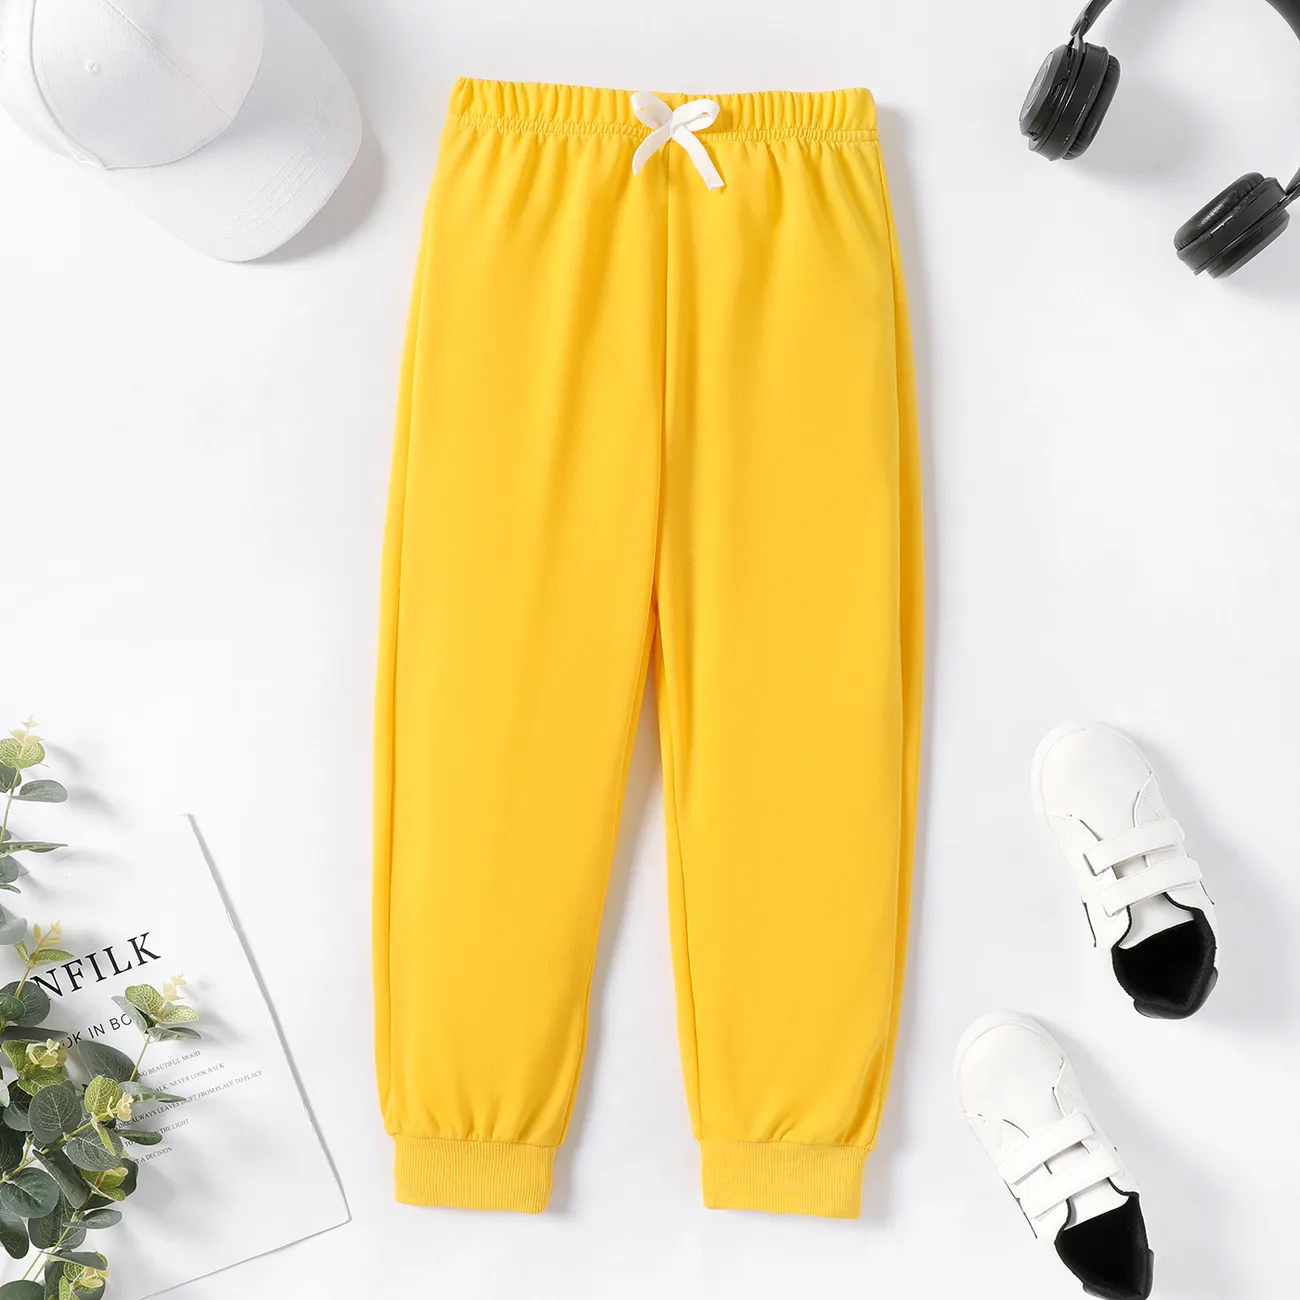 Einfarbige, elastische Hosen für Kinderjungen/Kindermädchen gelb big image 1